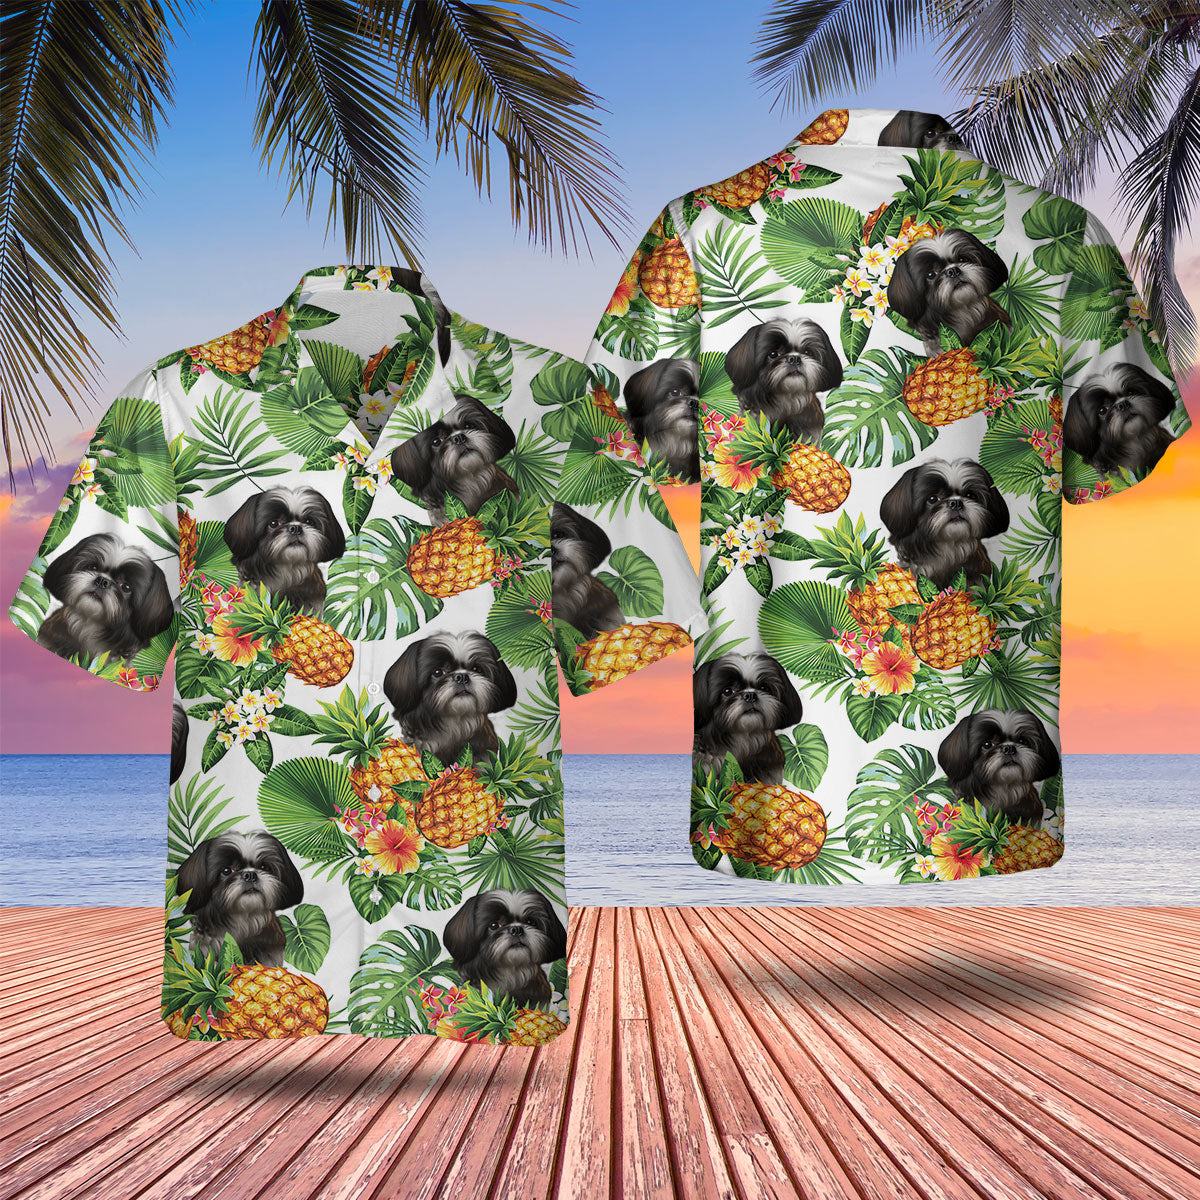 Shih Tzu 2 AI - Tropical Pattern Hawaiian Shirt